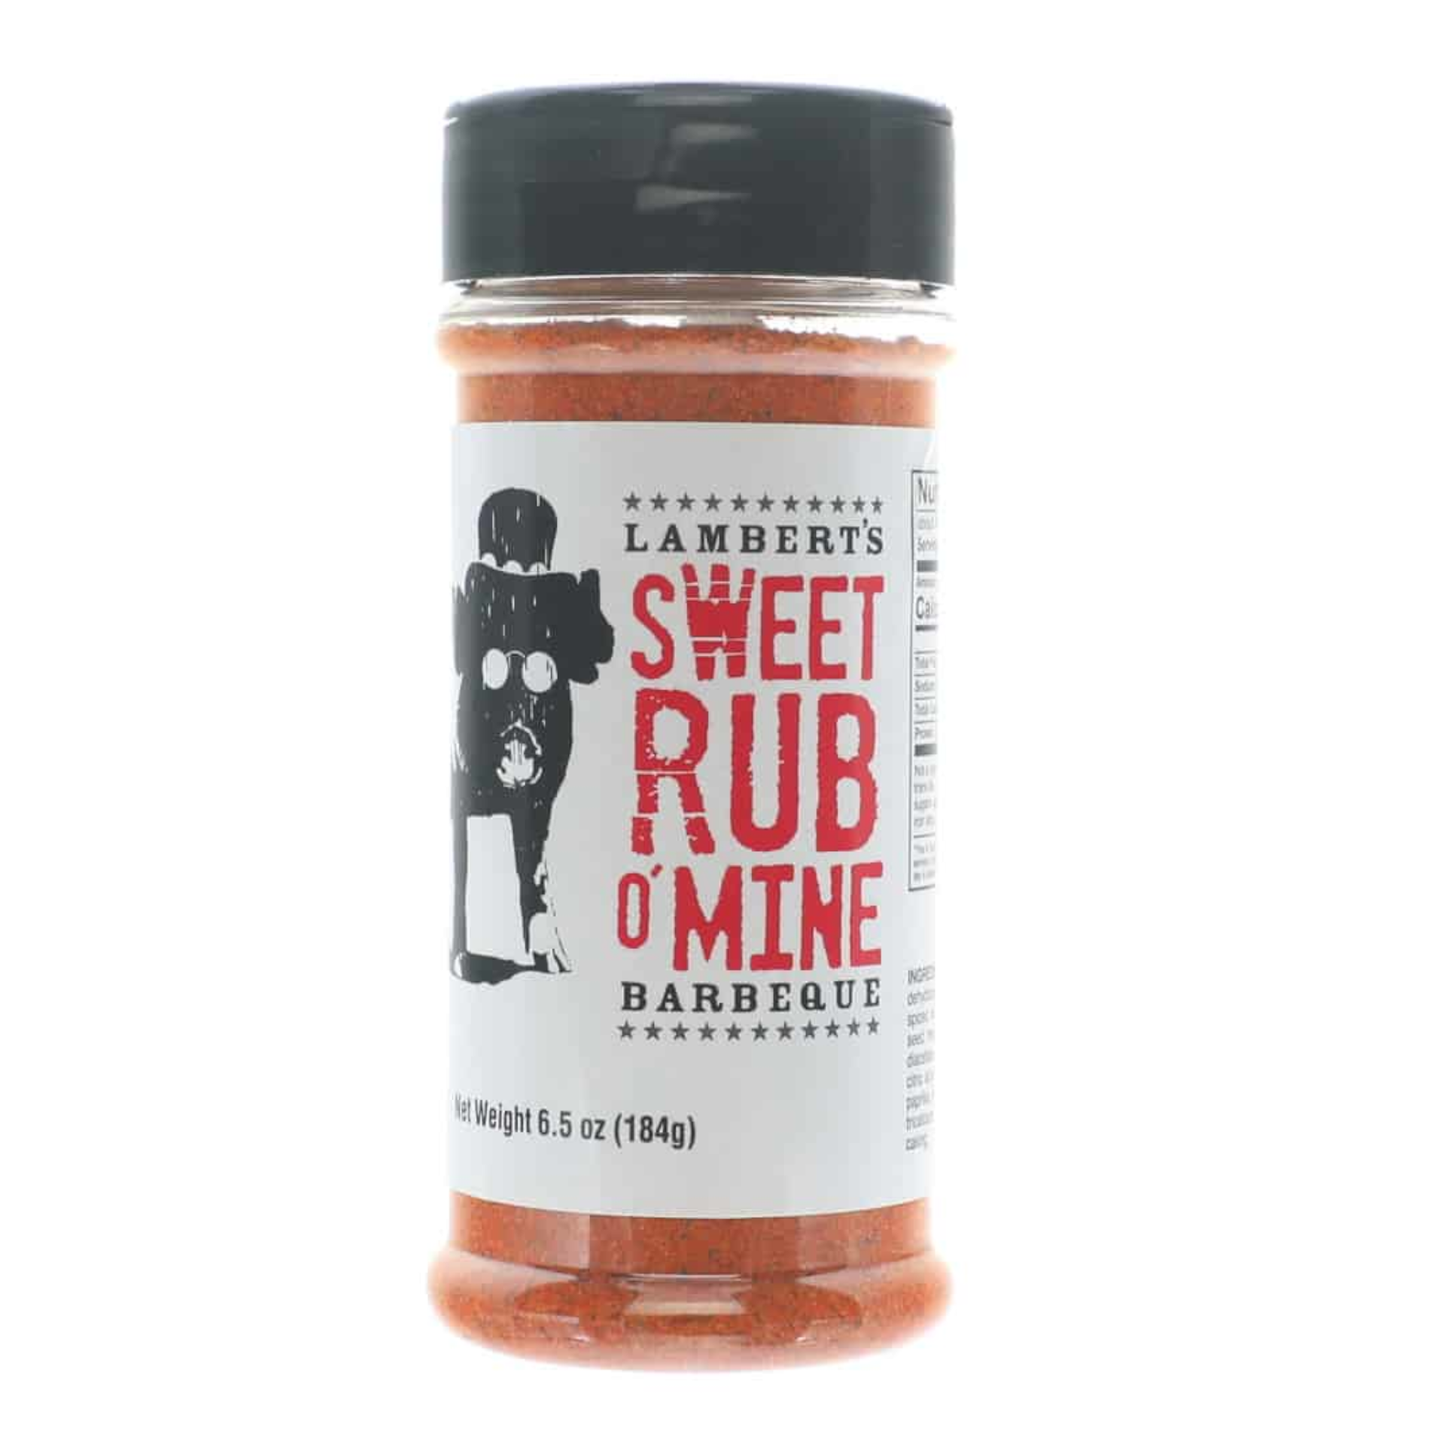 Sweet Rub O' Mine "Original" BBQ Rub